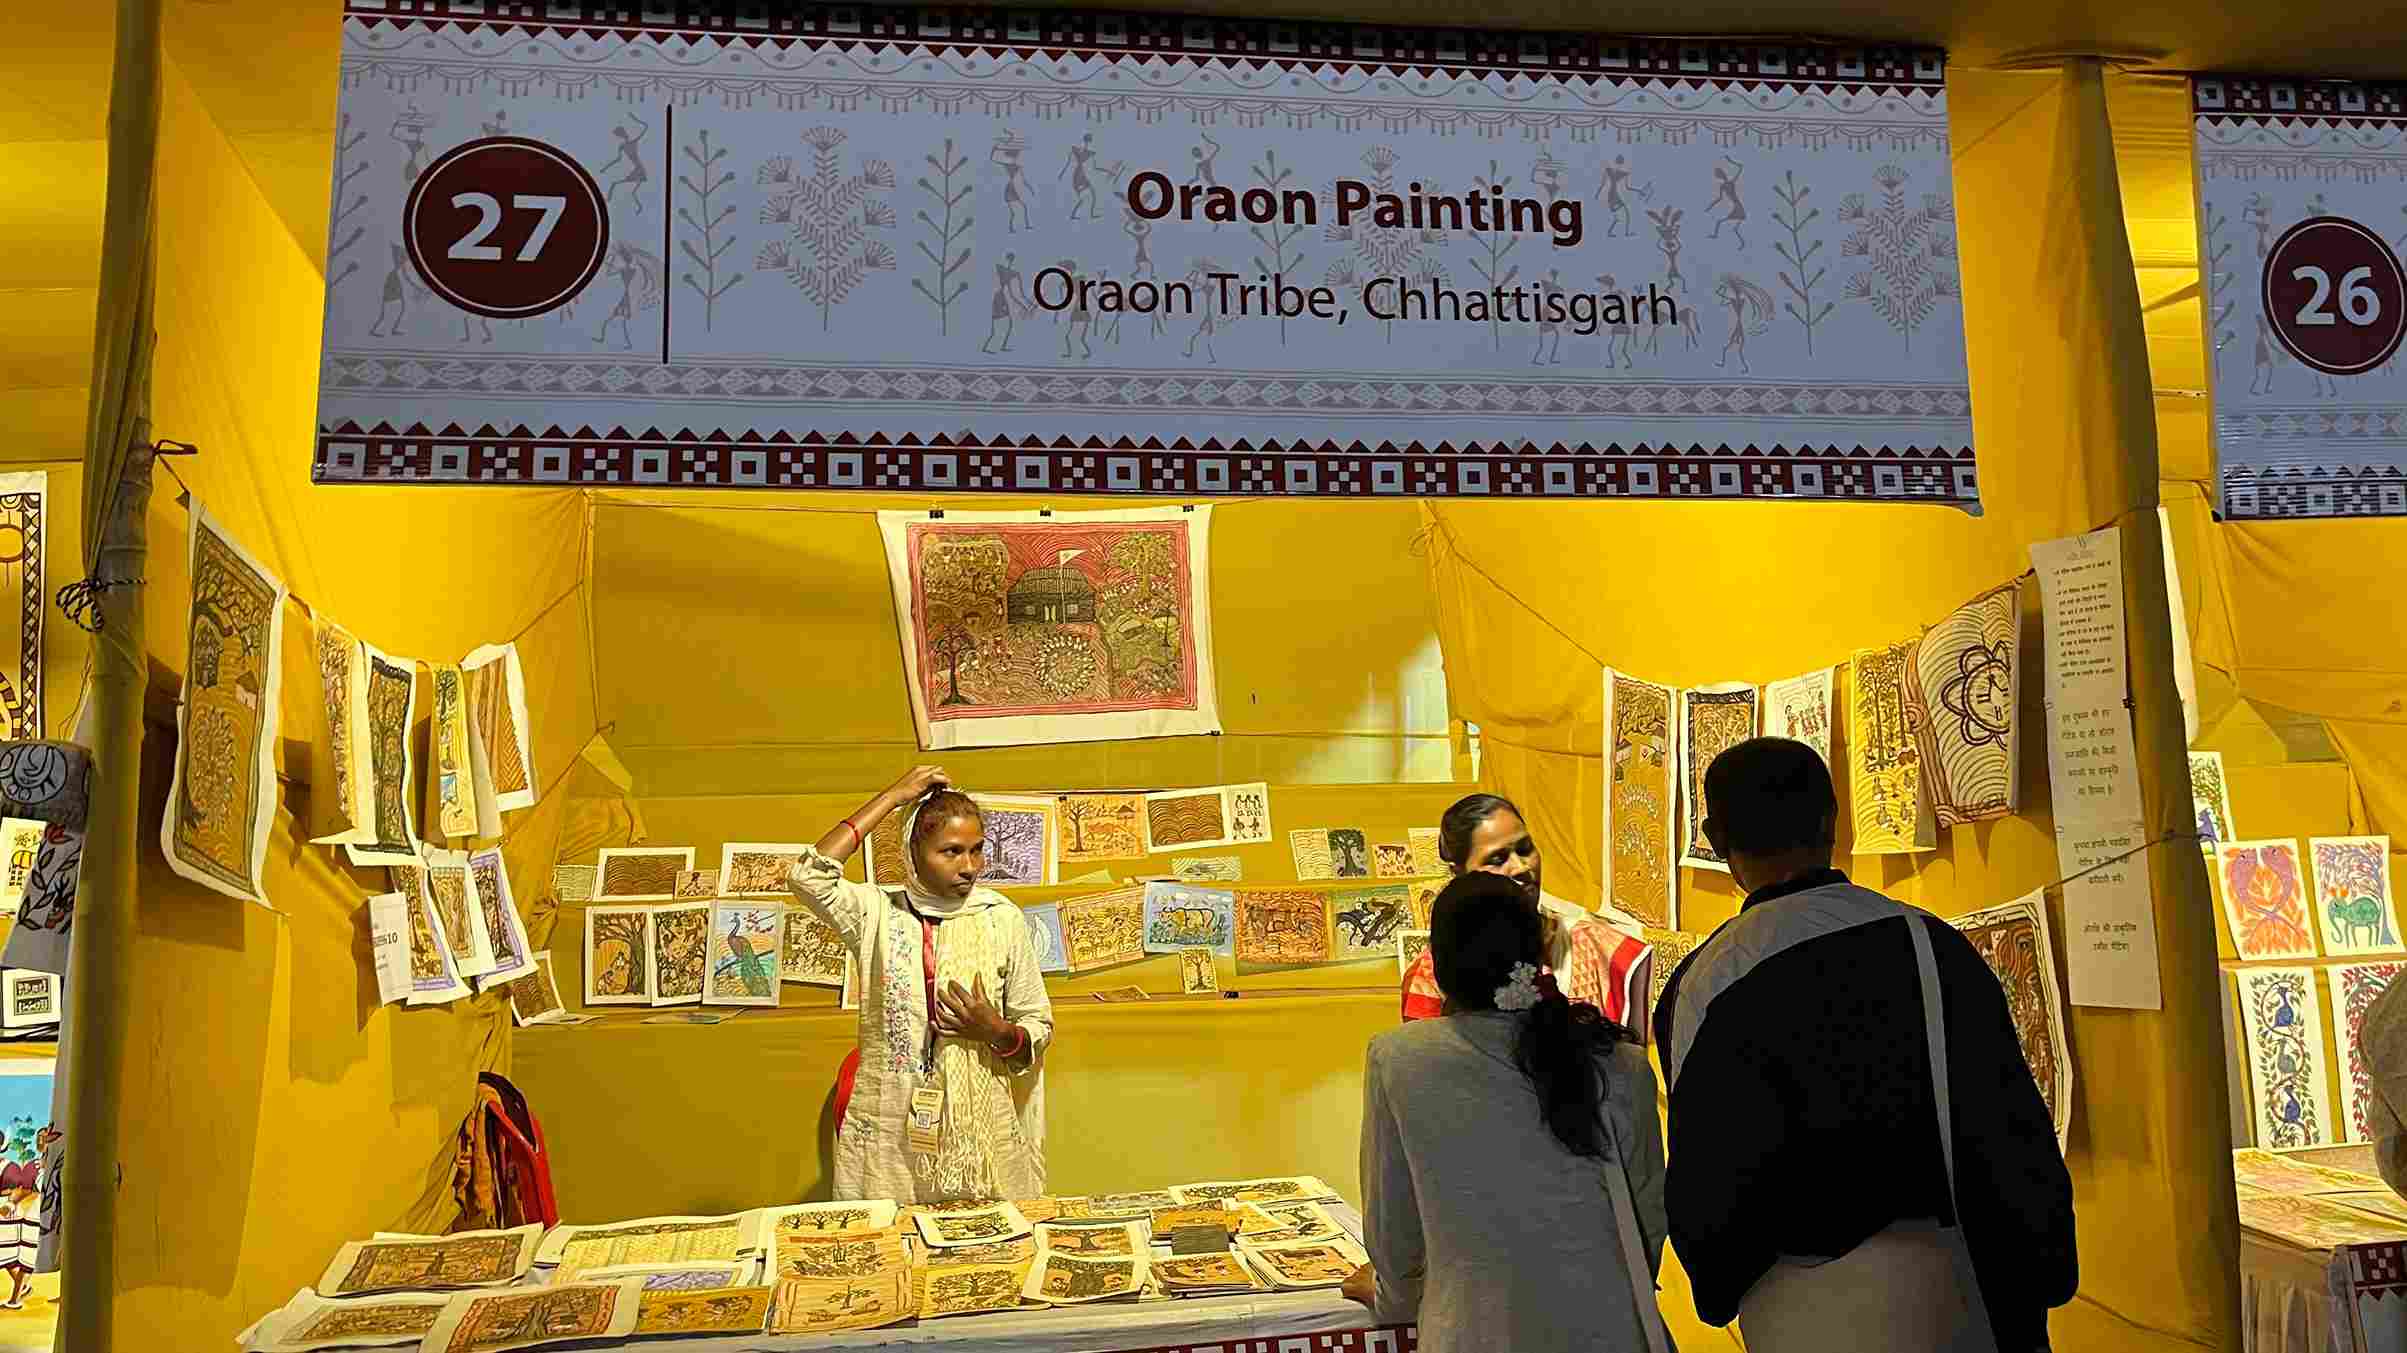 Sumanti's stall at Samvaad displayed Oraon paintings.